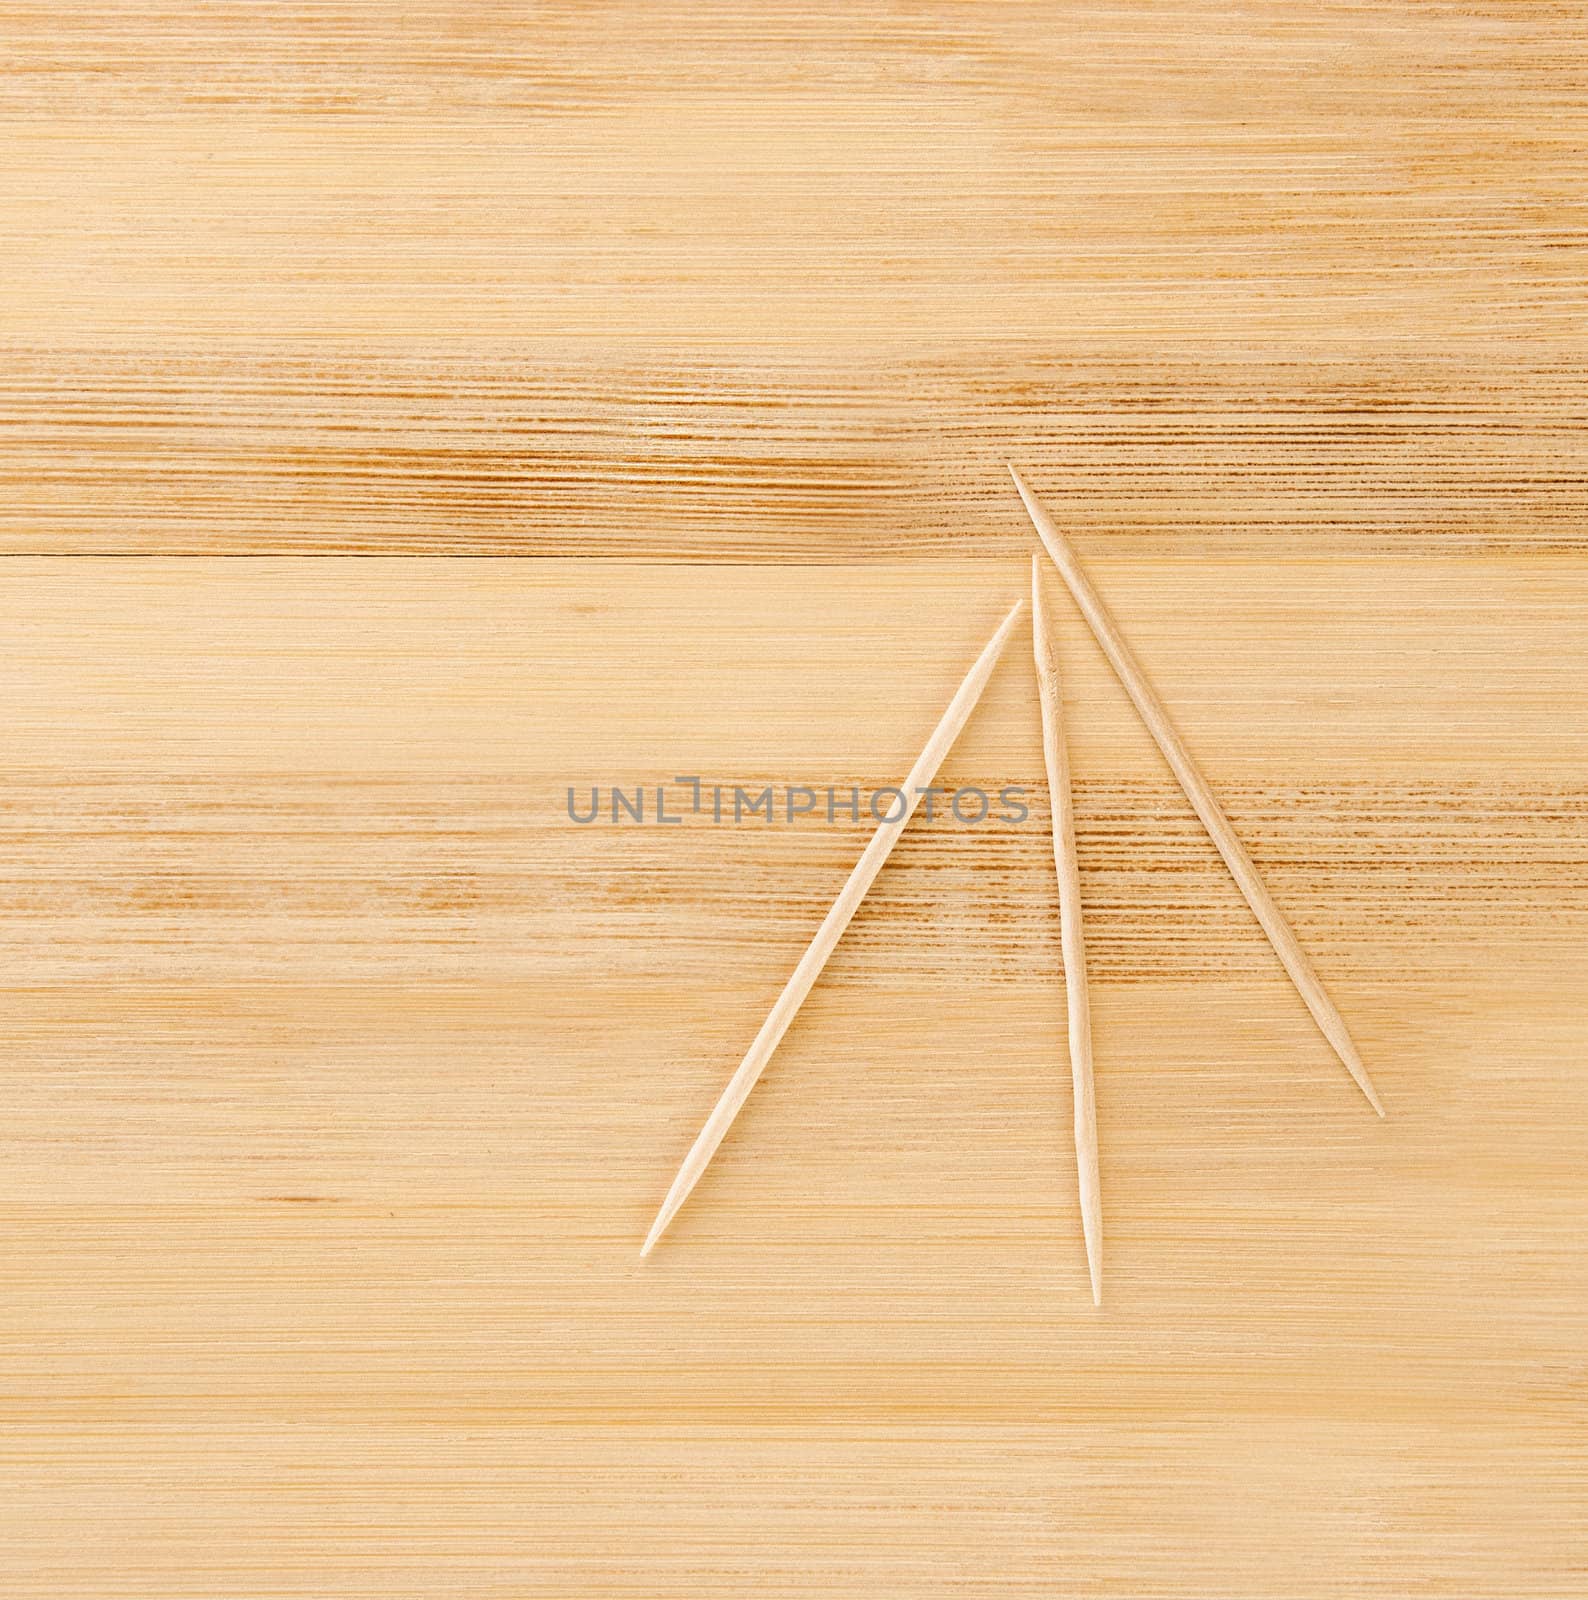 three toothpicks on a light wooden table